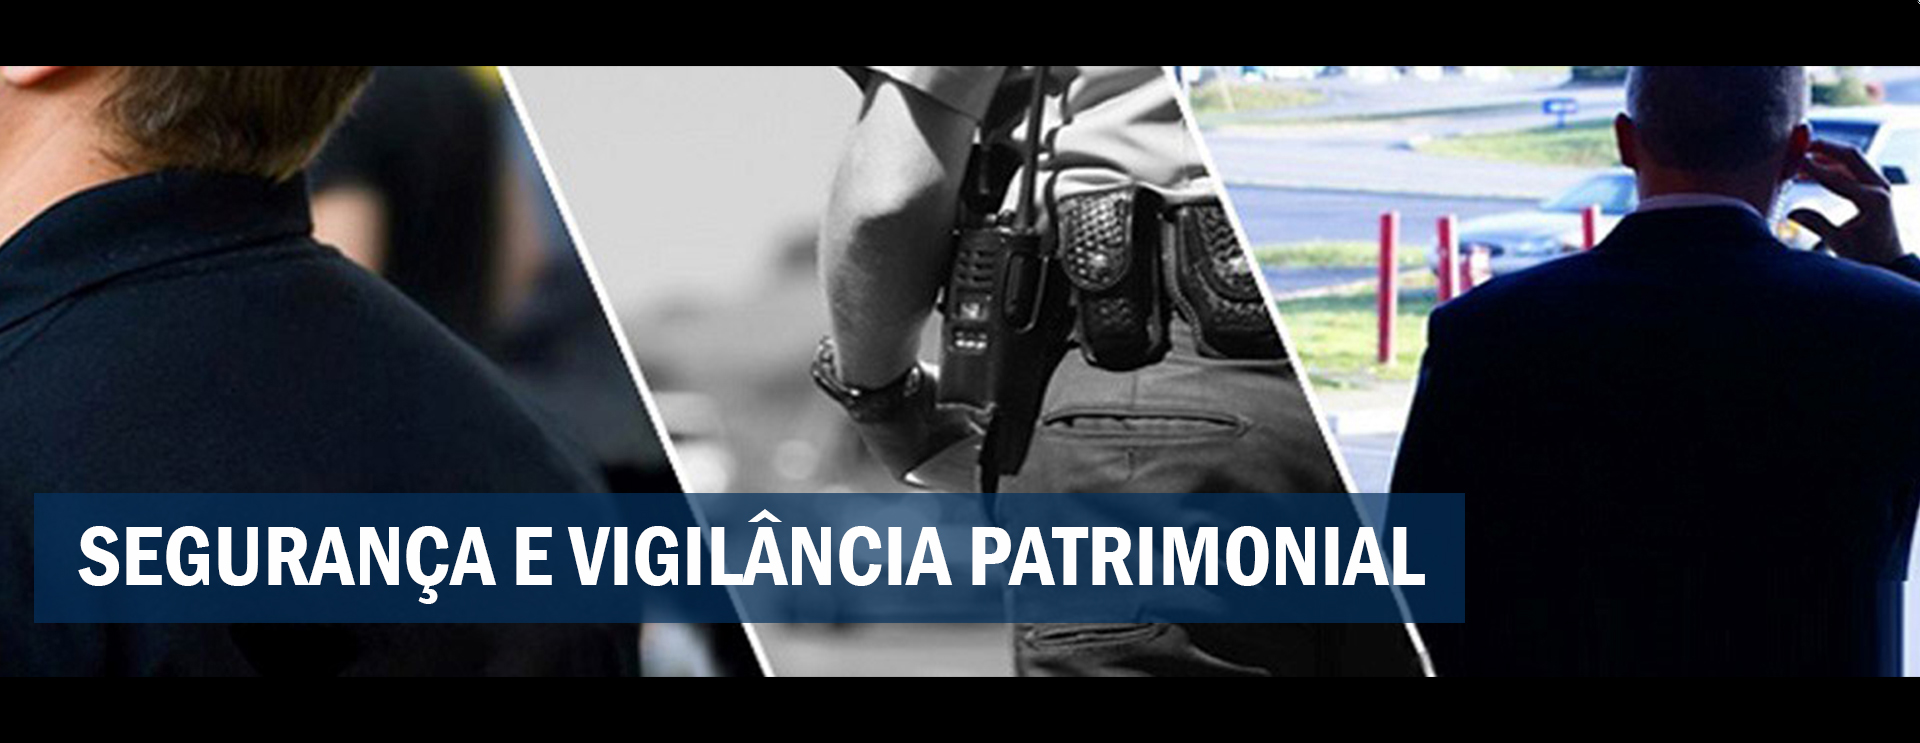 segurança e vigilância patrimonial - Guarulhos